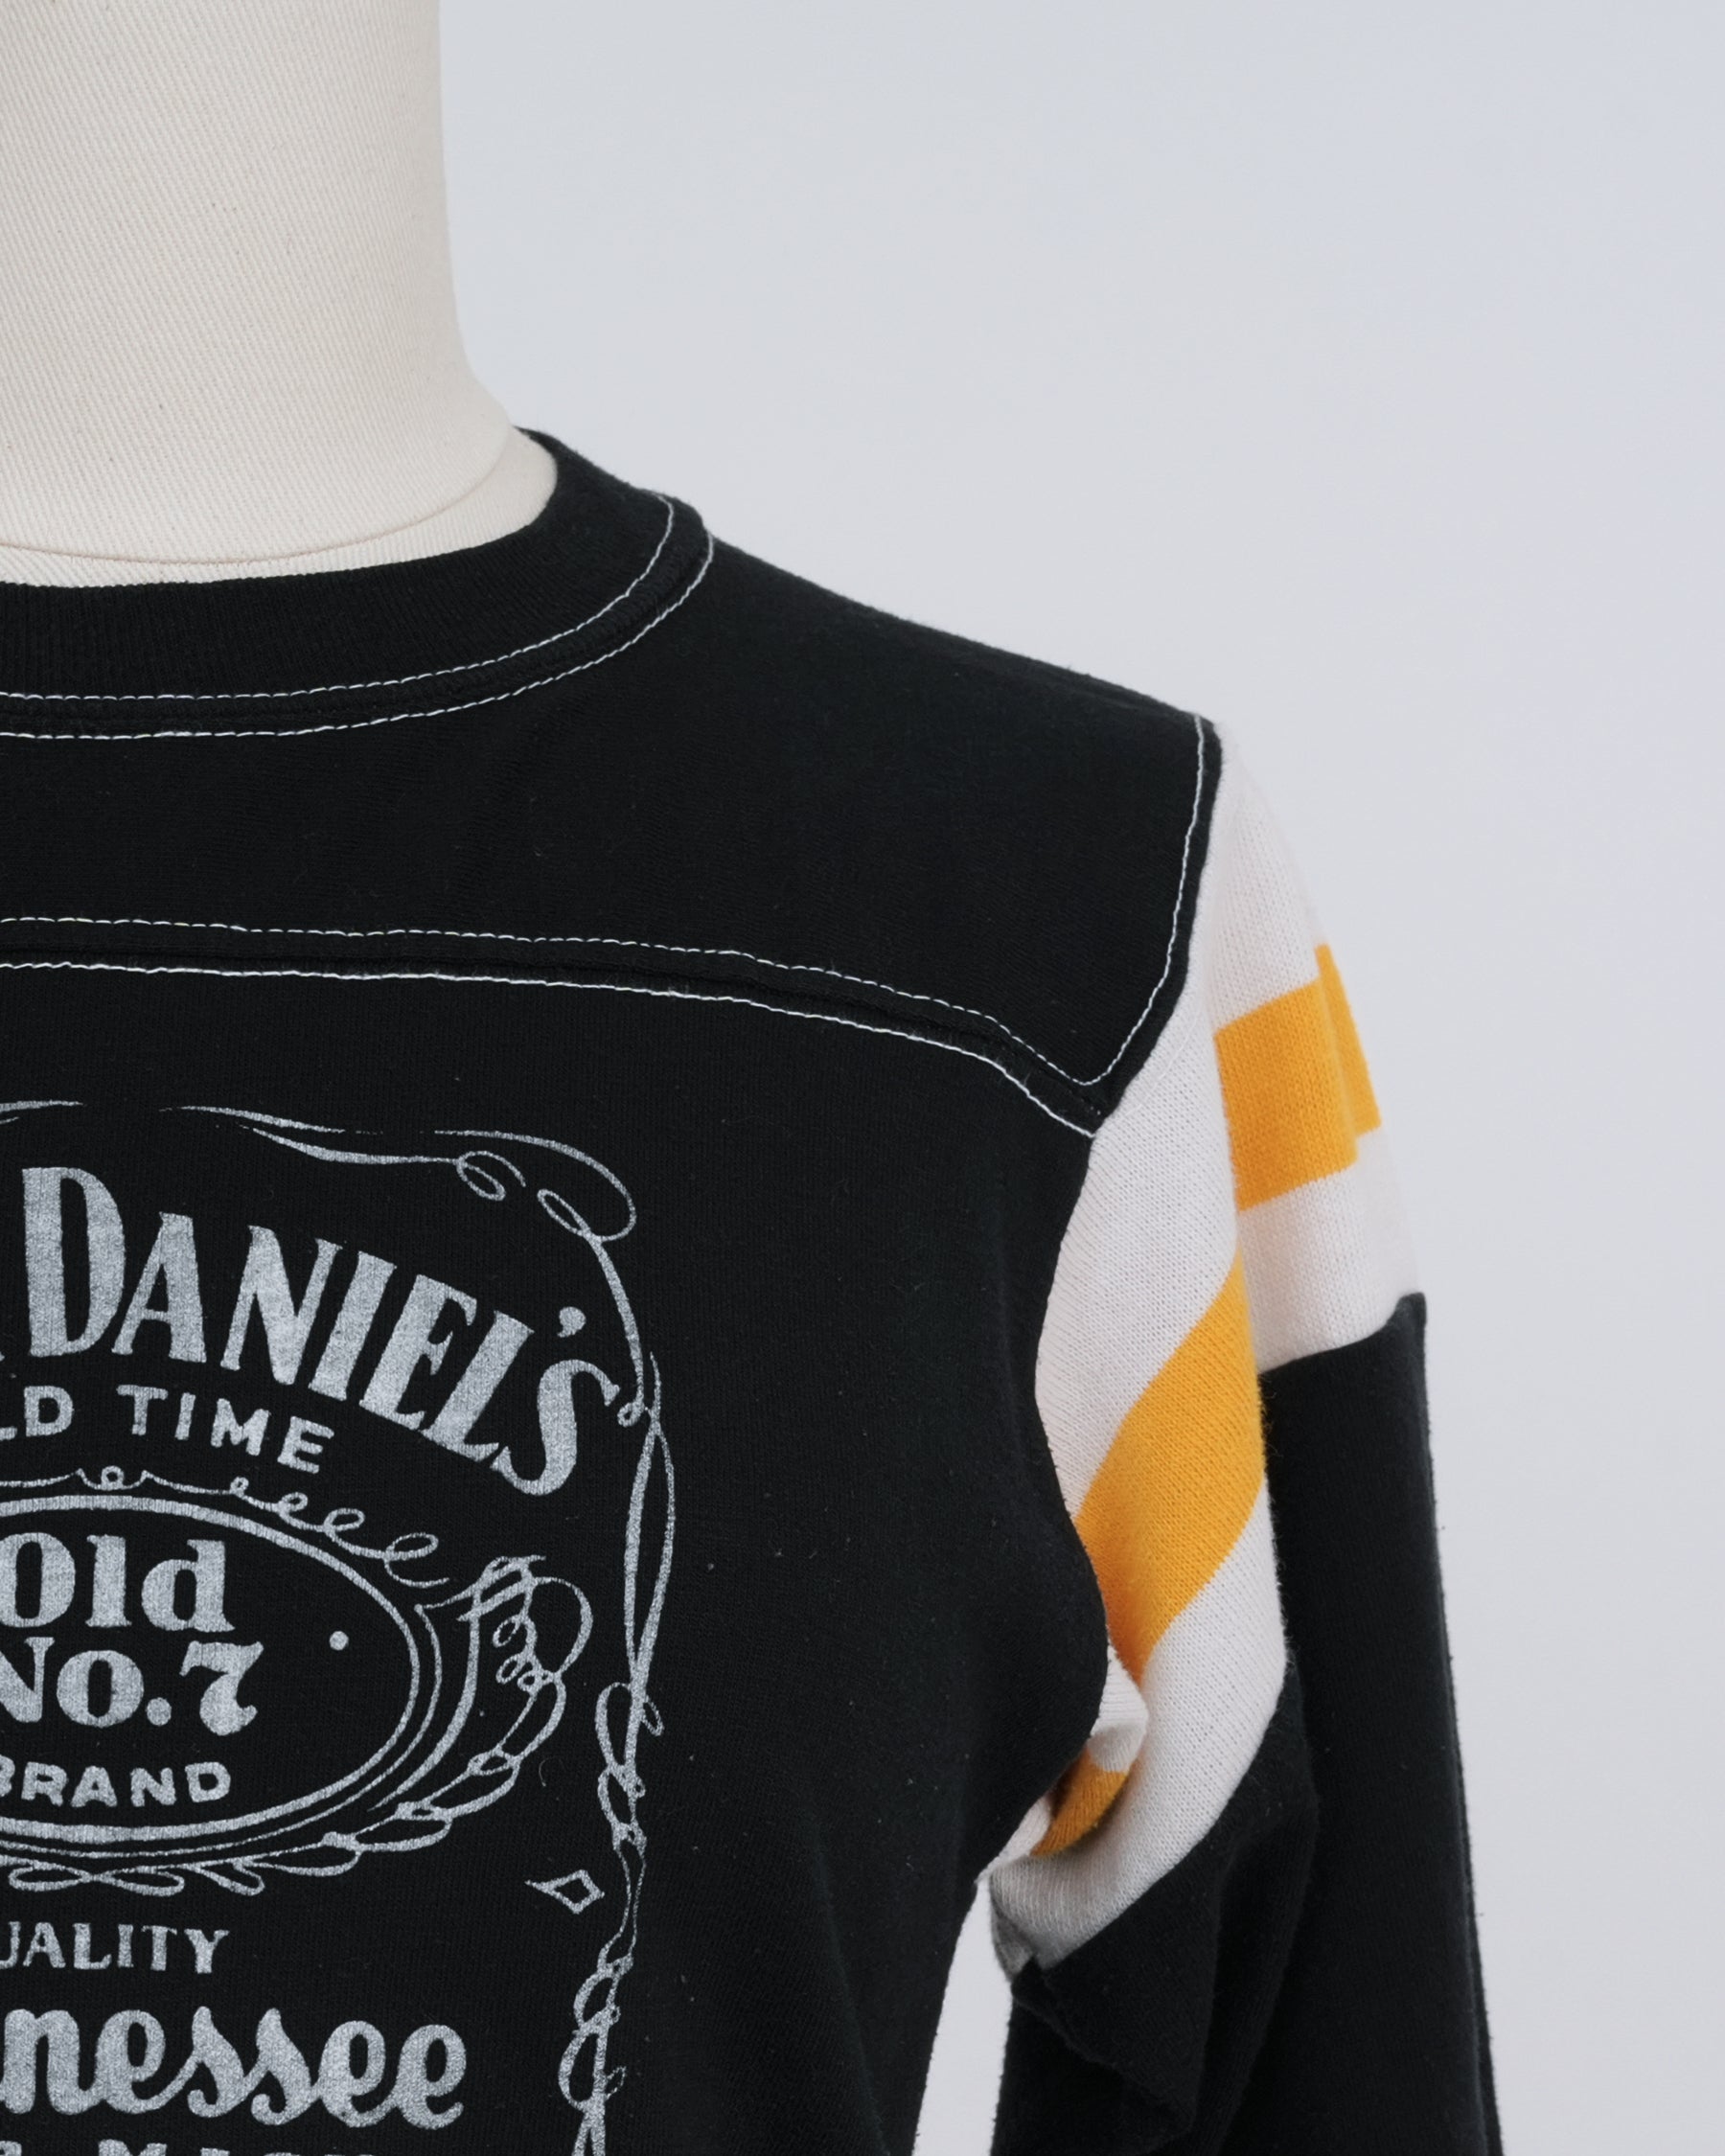 Jack Daniel's Printed T-shirt